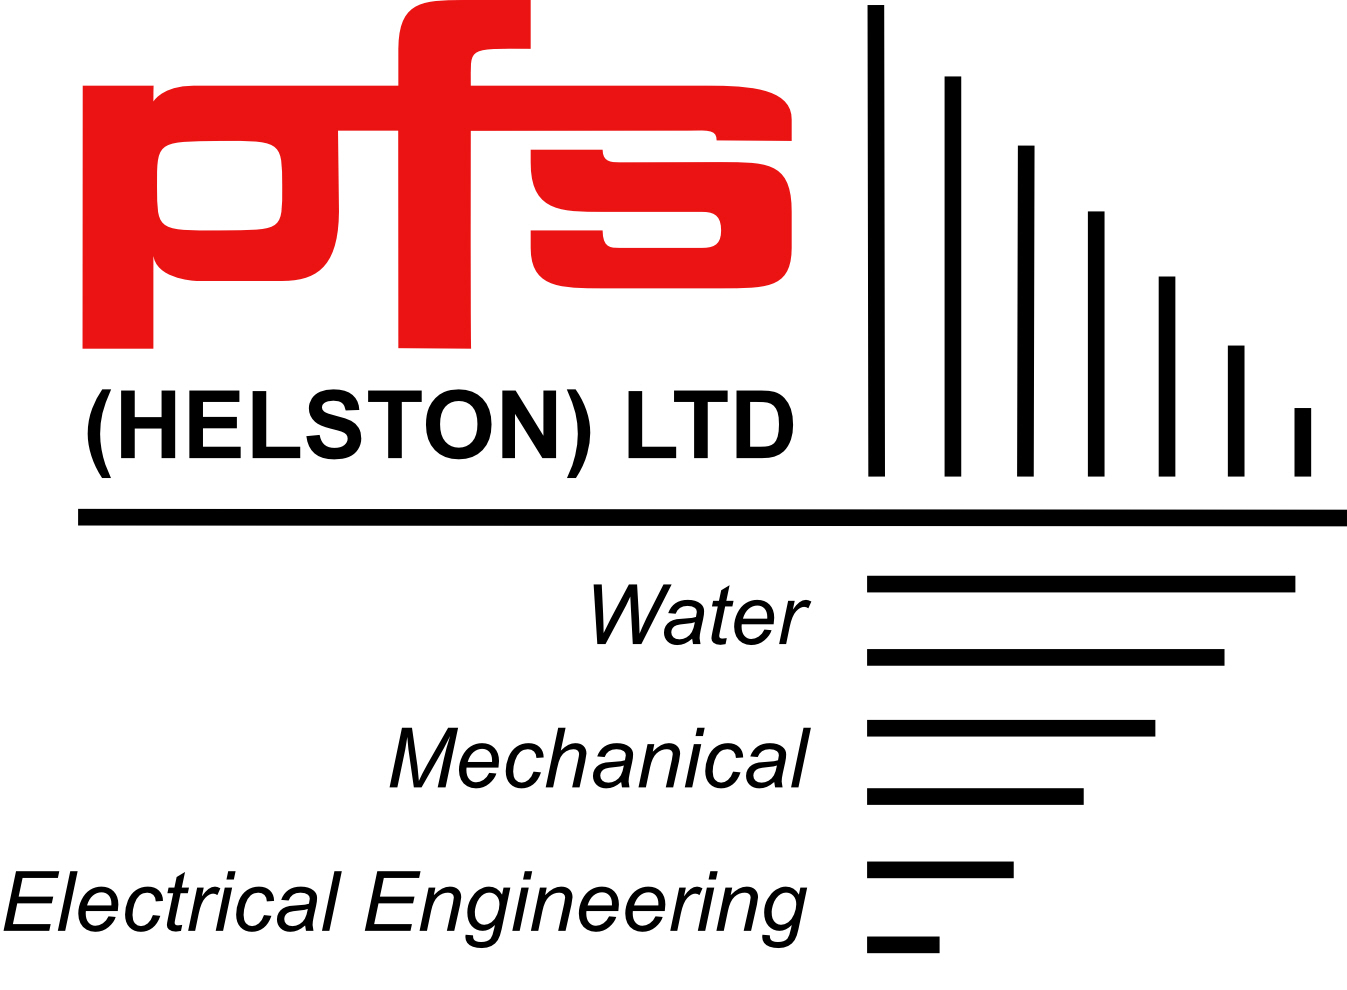 PFS (Helston) LTD